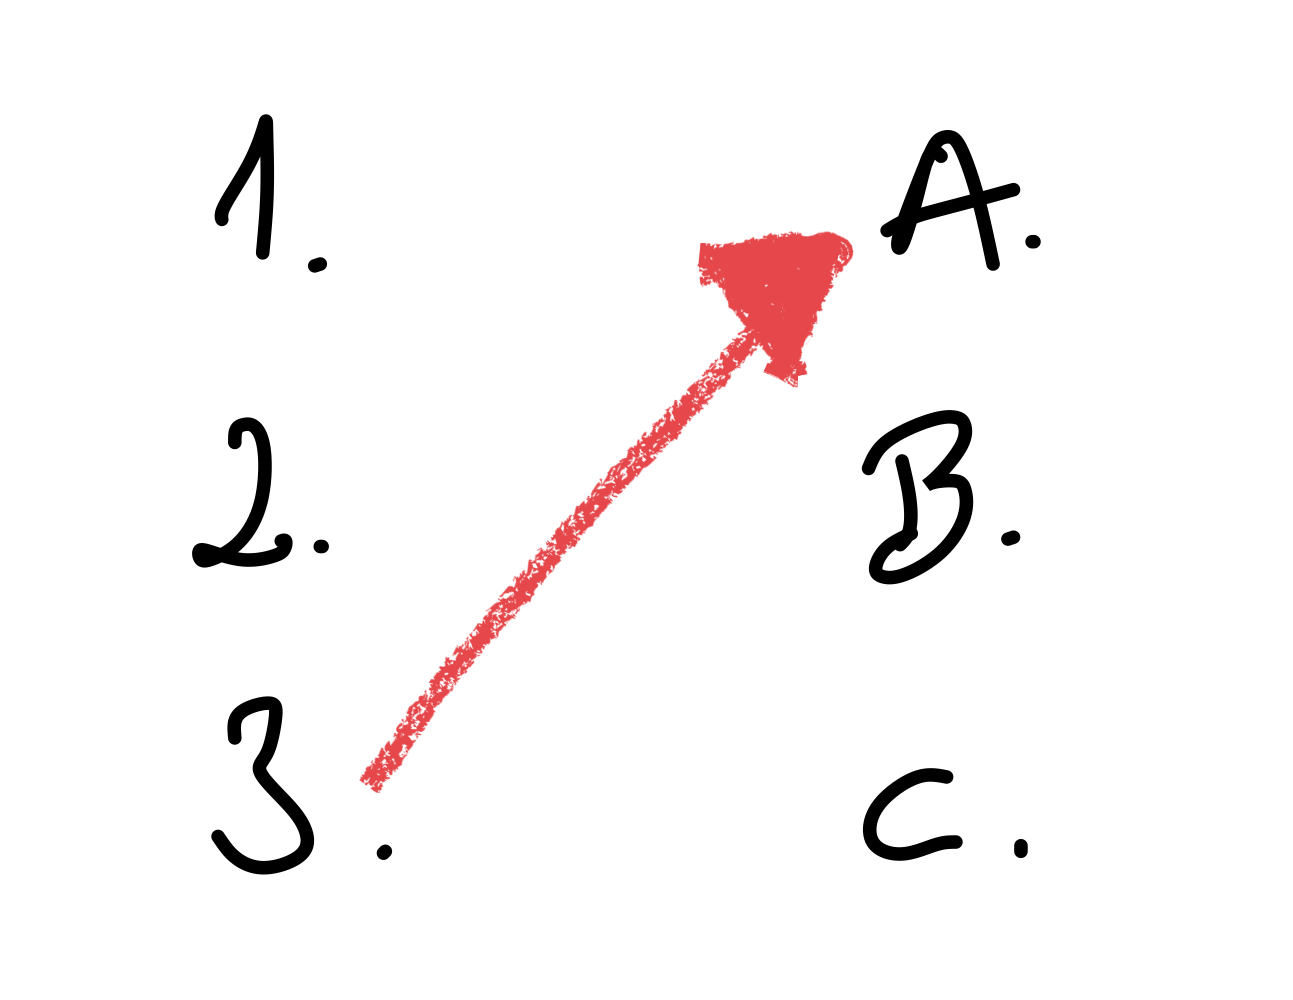 Pictograma con letras y número y unido con una flecha